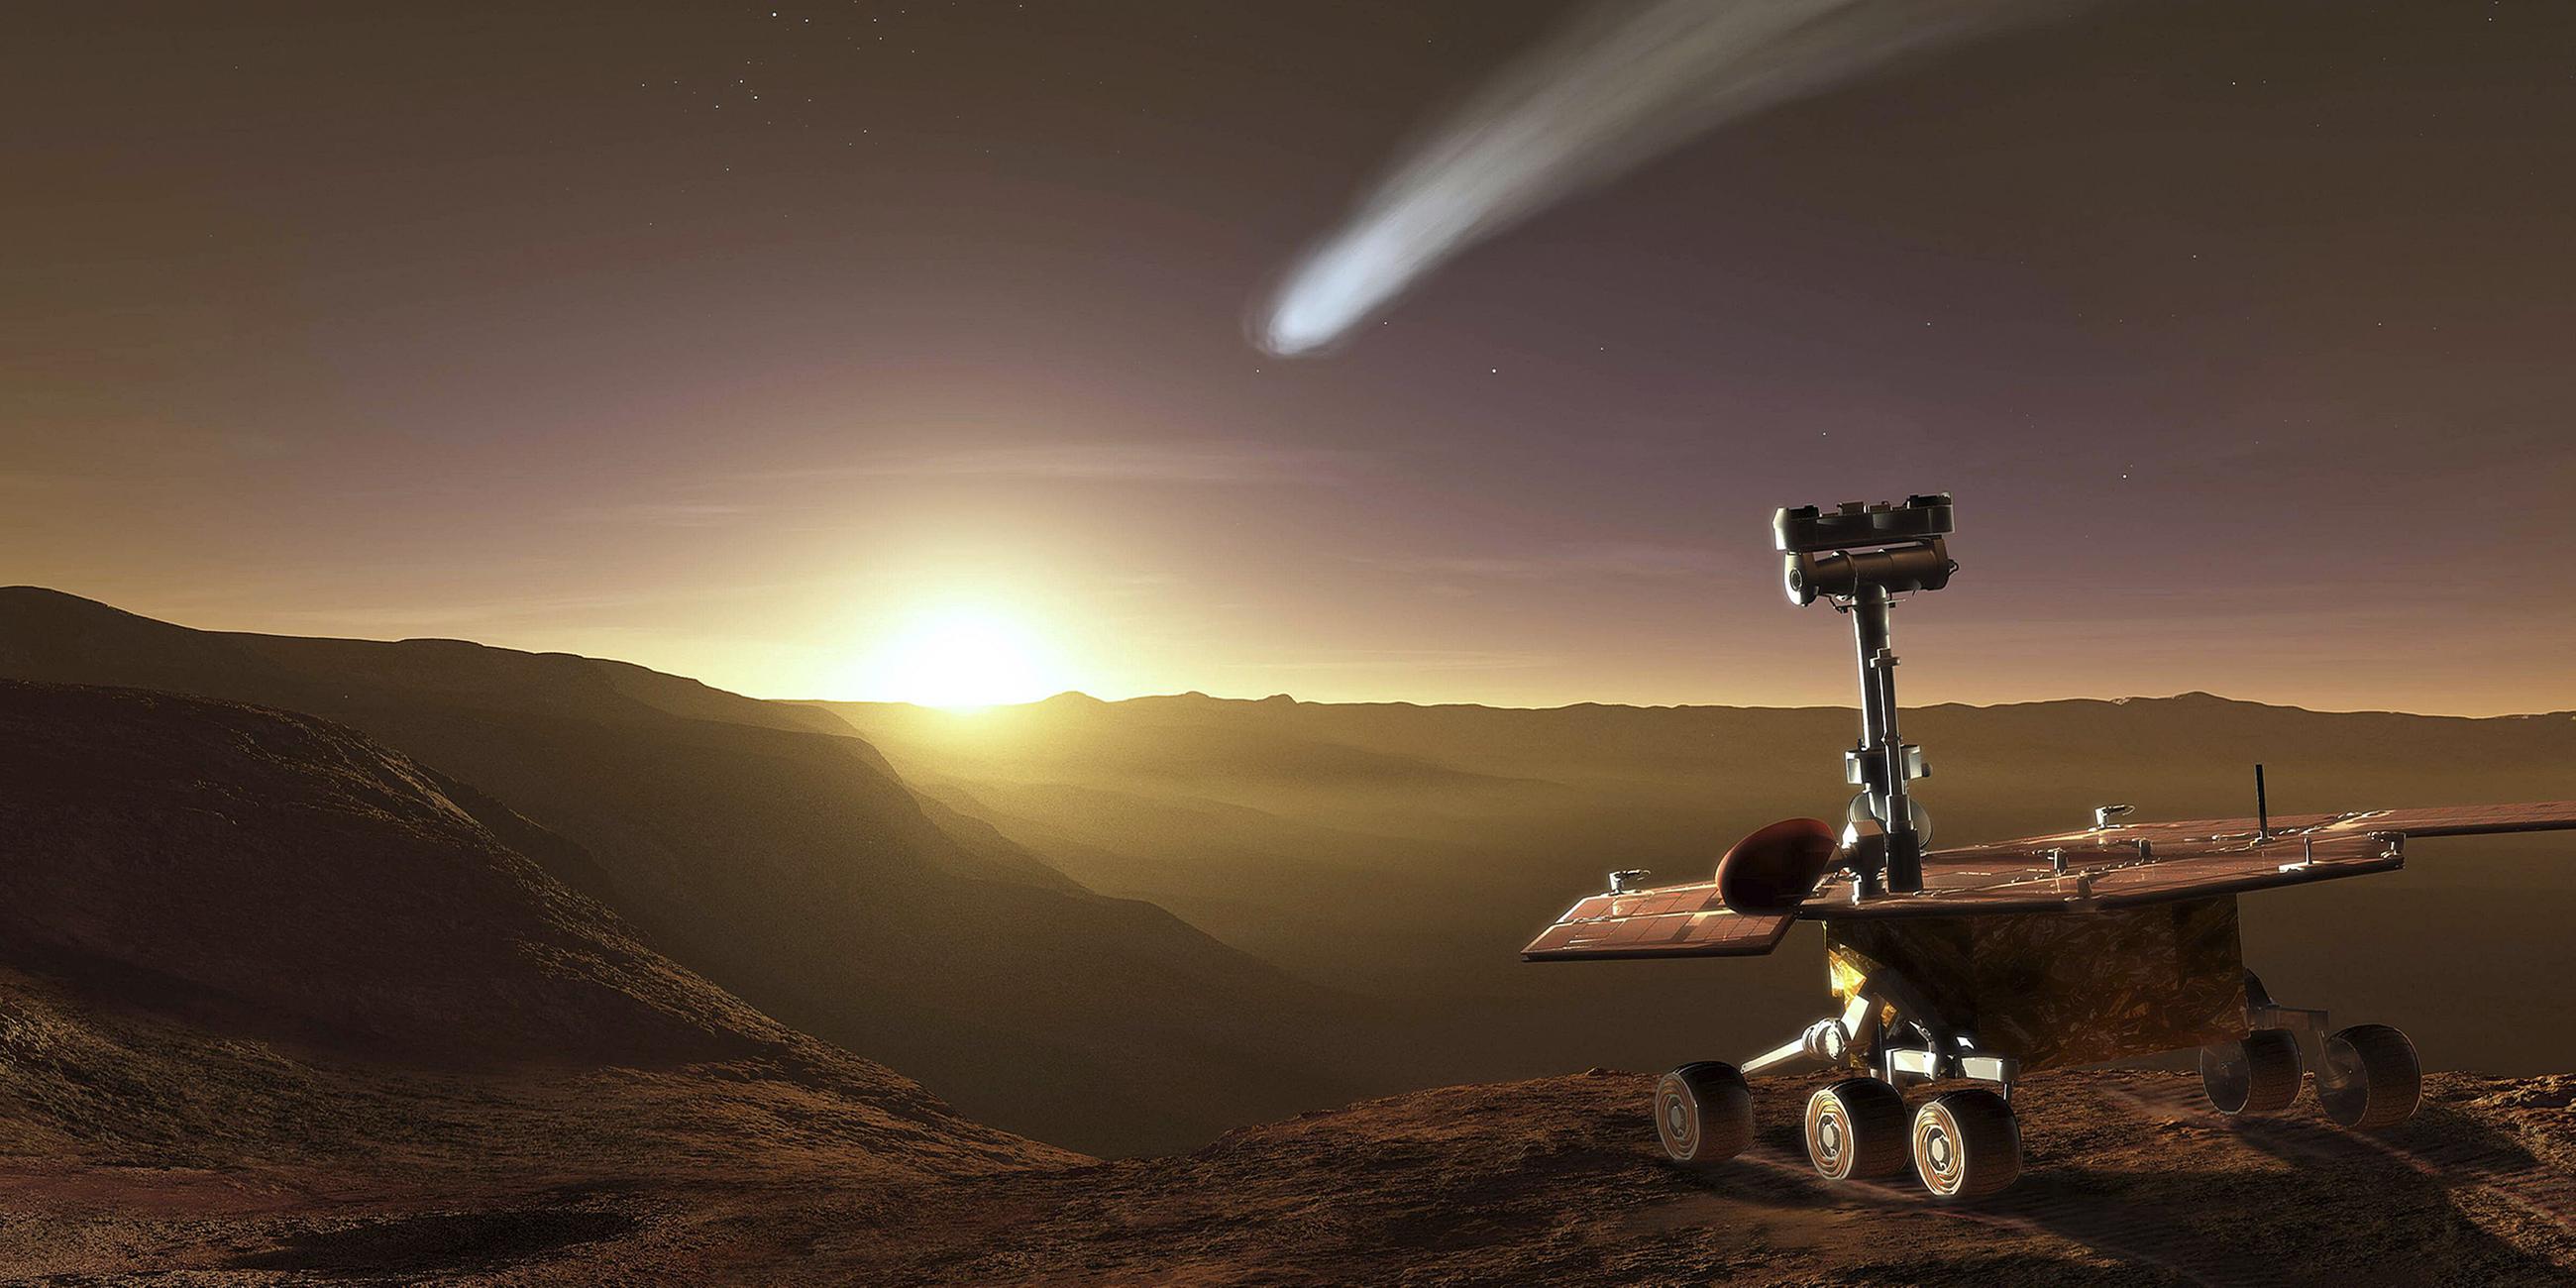 Archiv: Mars-Rover "Opportunity", aufgenommen am 01.04.2013